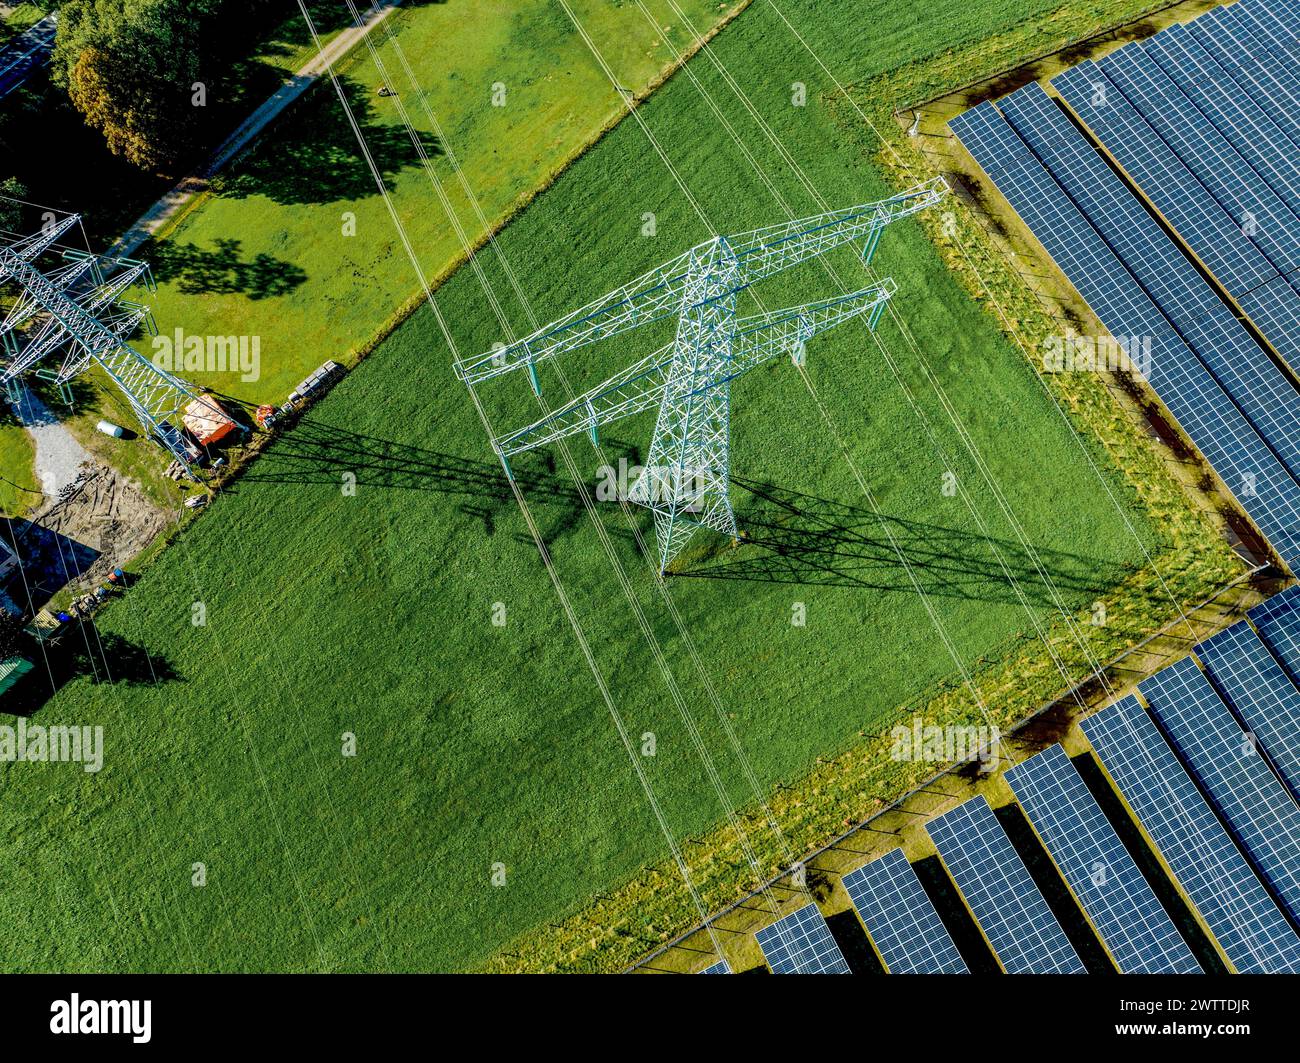 Vista aérea de paneles solares junto a un pilón de electricidad en exuberantes campos verdes Foto de stock